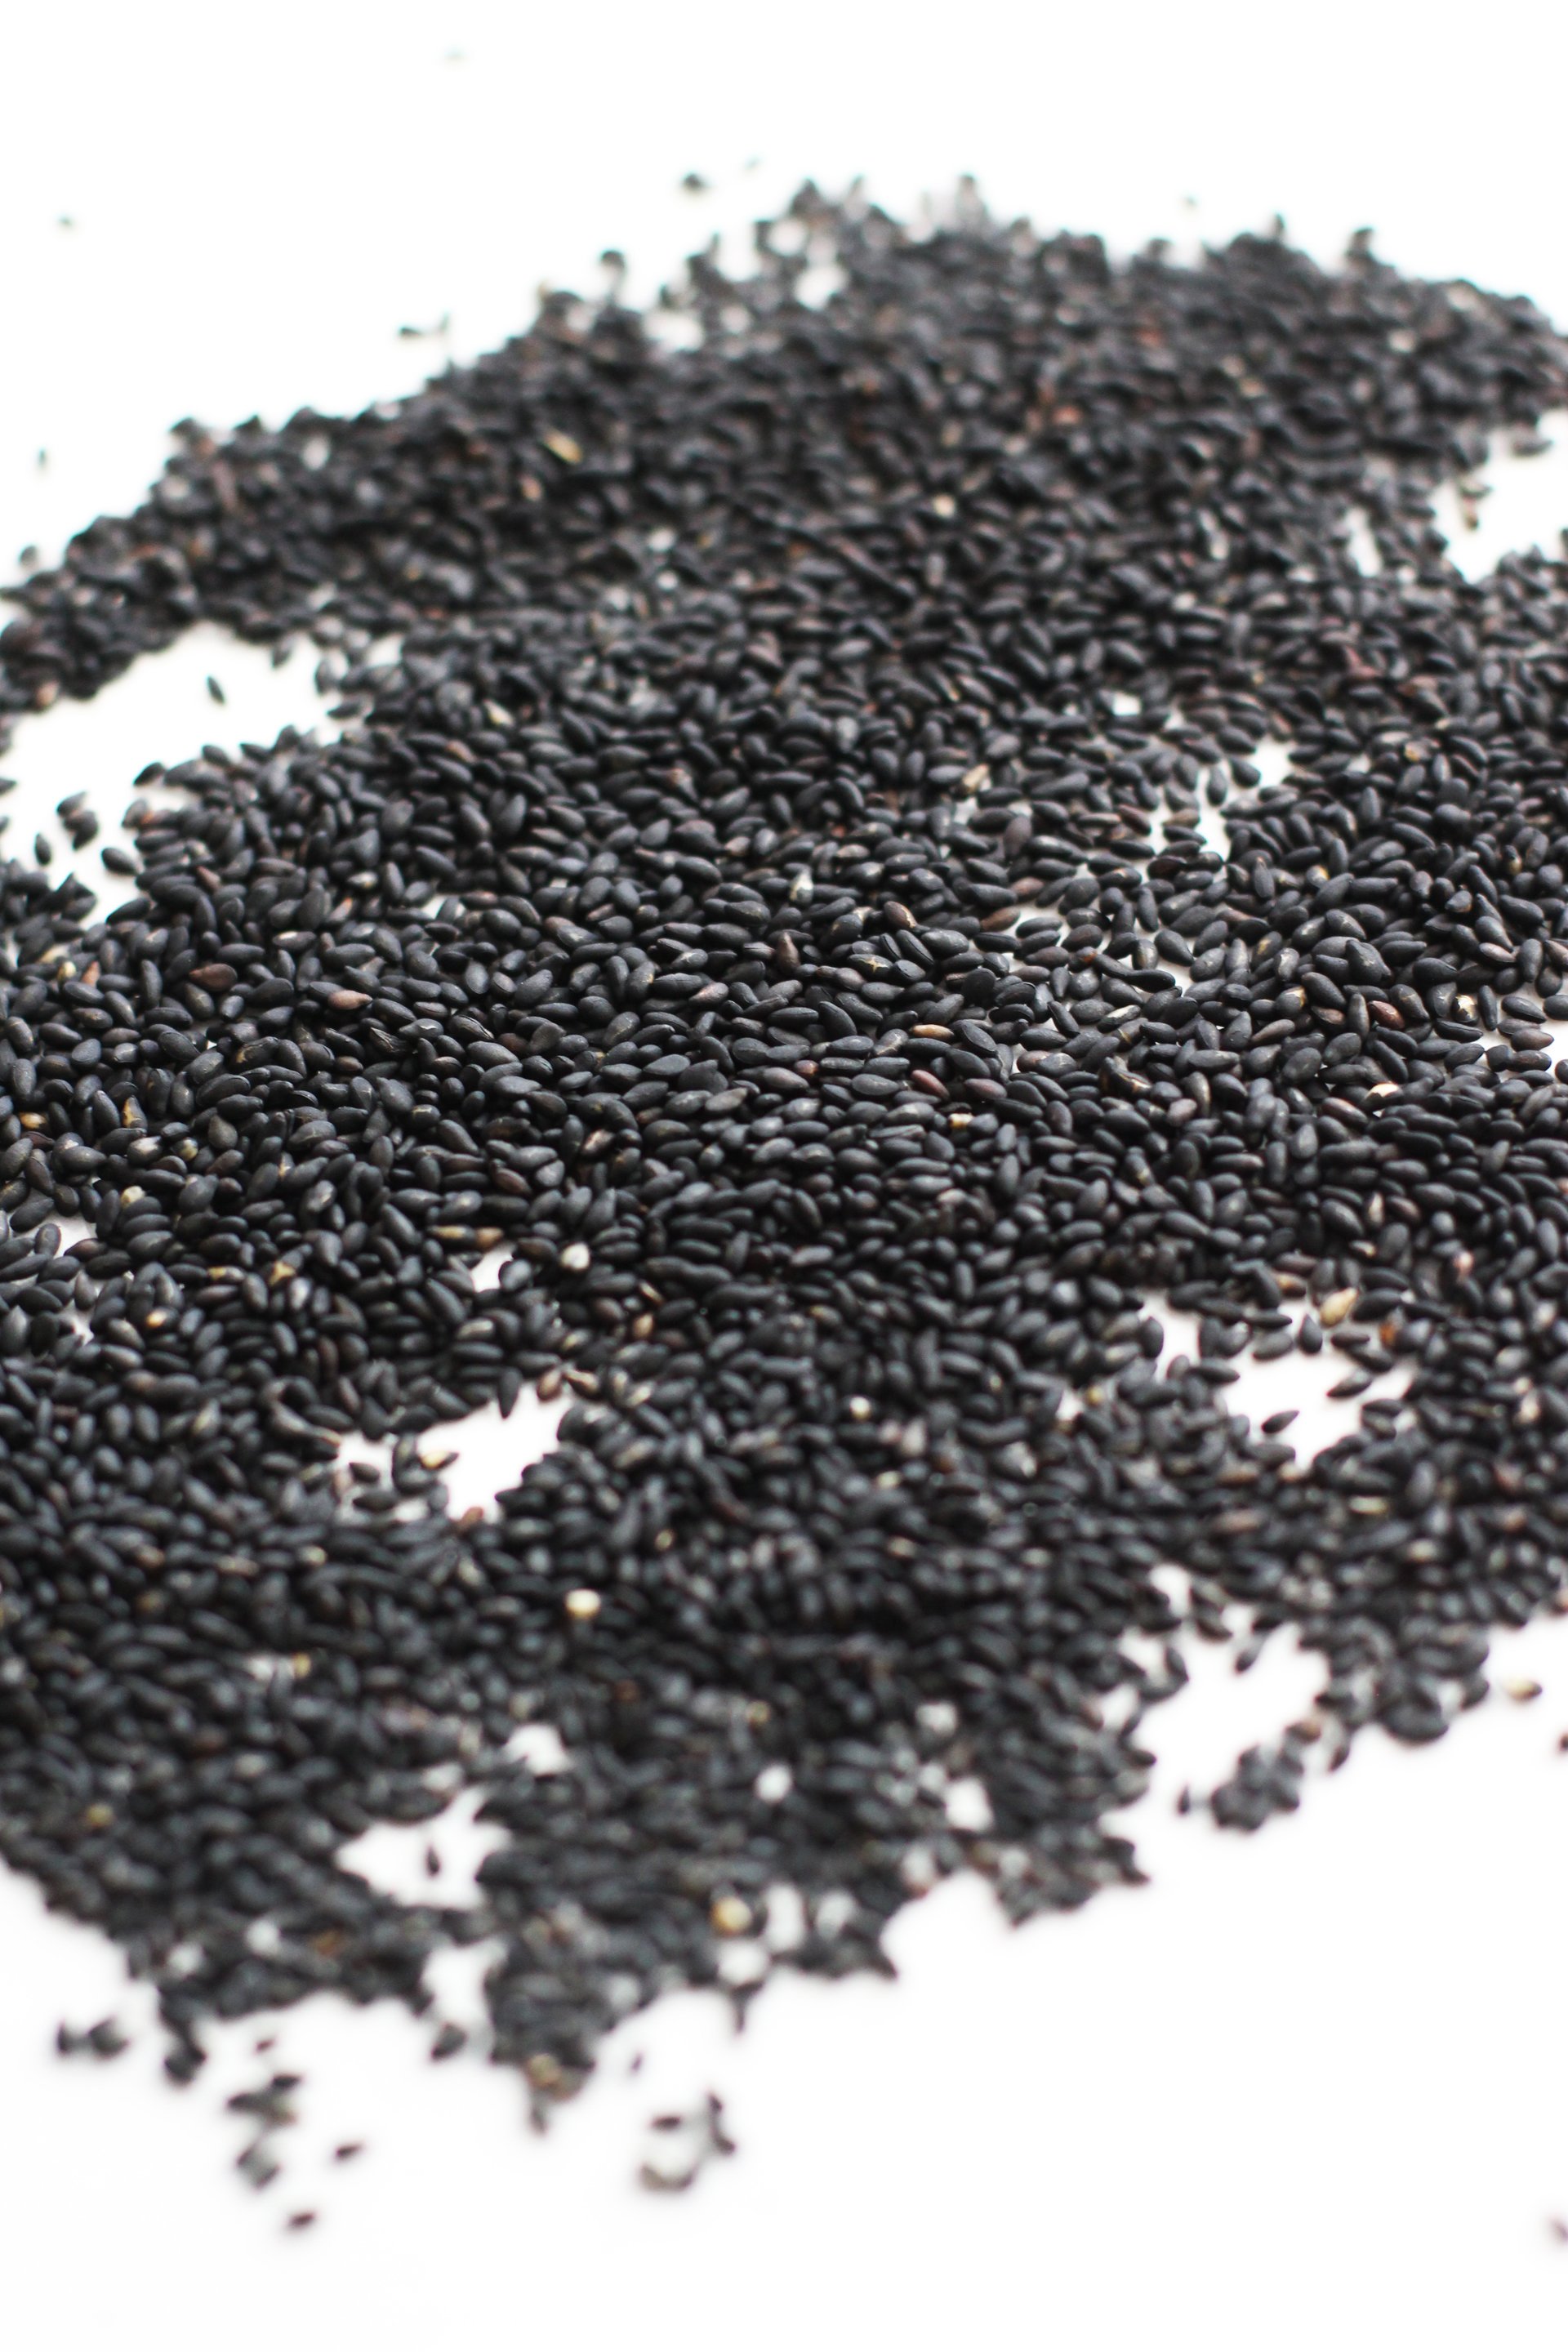 Black sesame seeds | HonestlyYUM